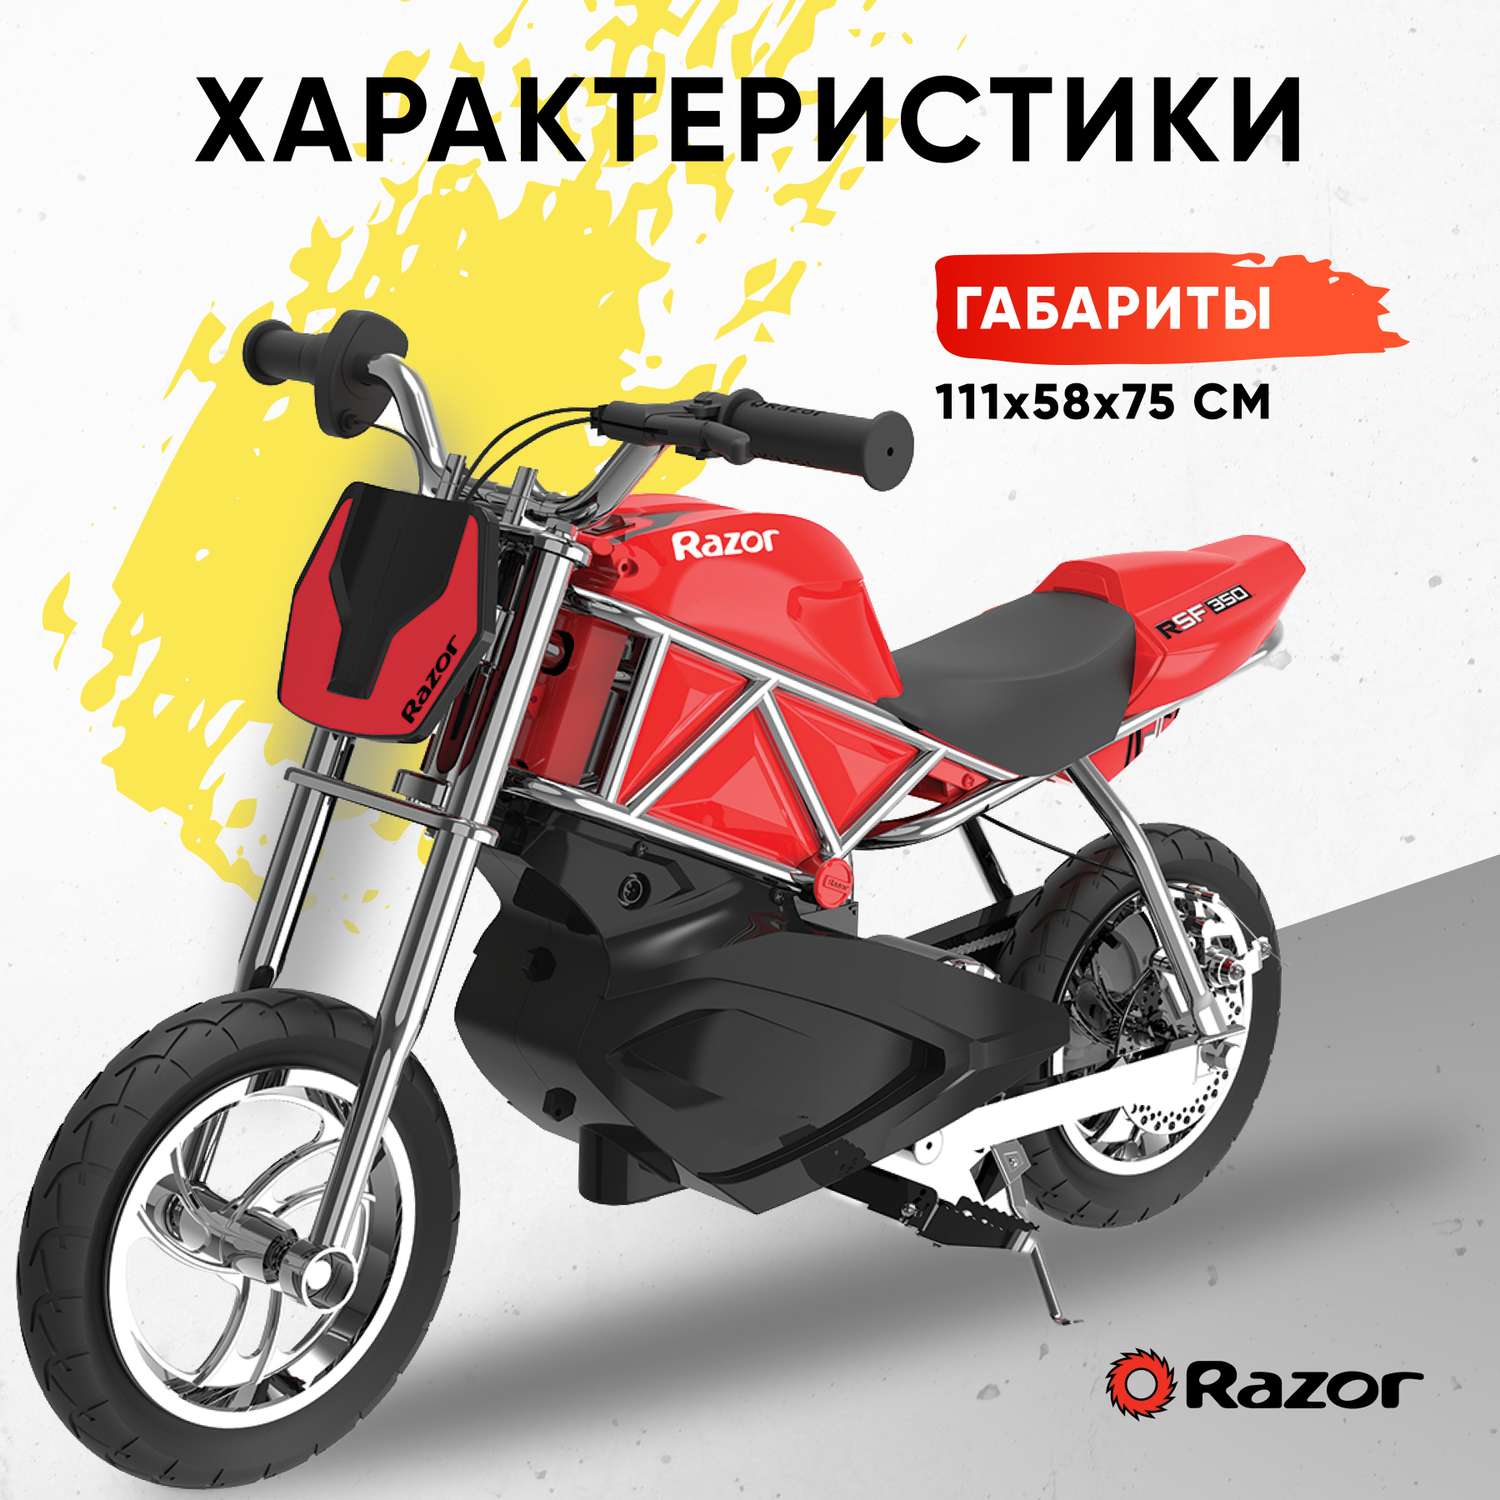 Электромотоцикл для детей RAZOR RSF350 красный спортивный детский - фото 2